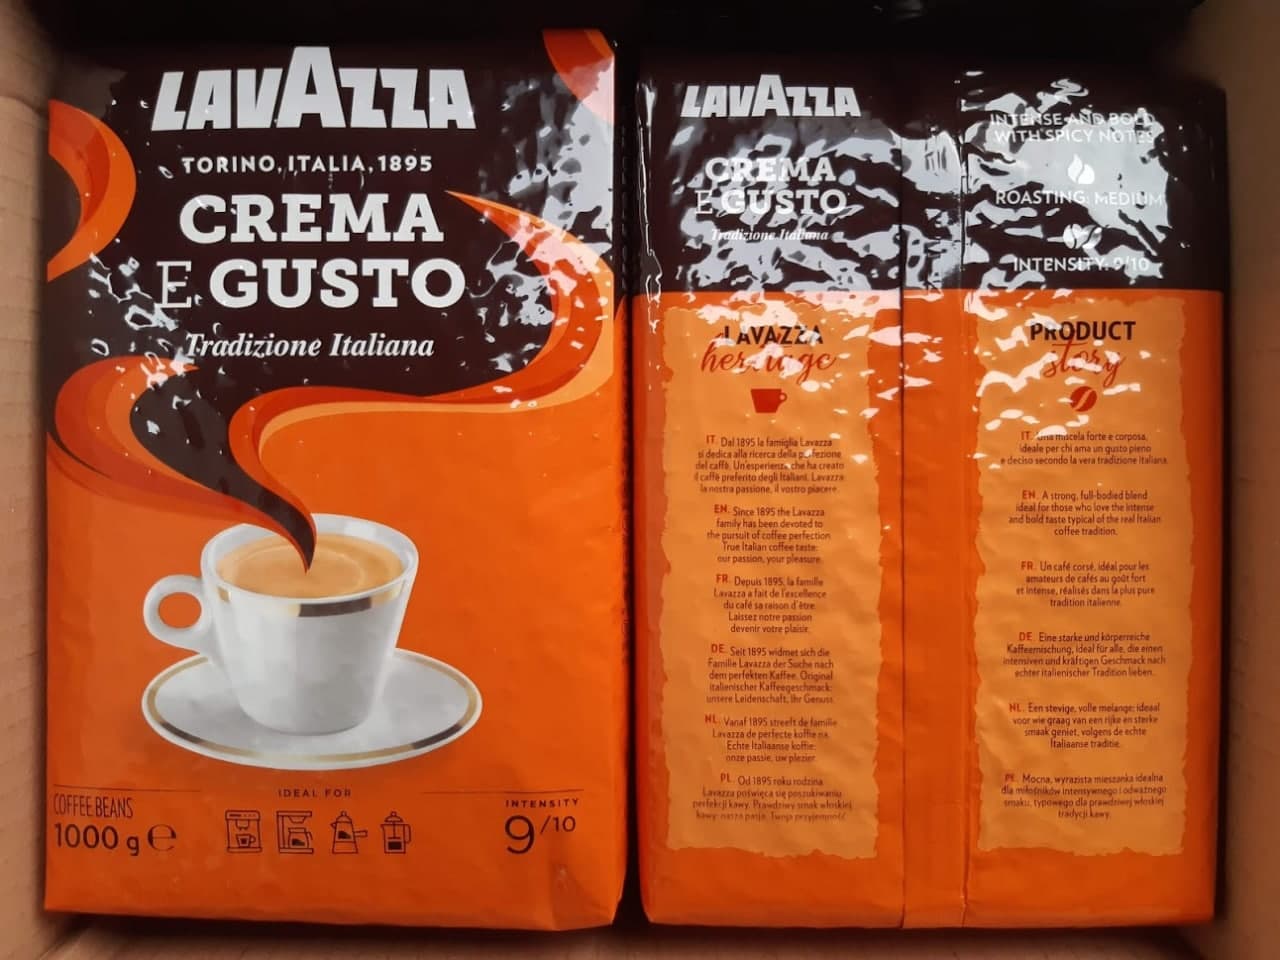 Зерновой кофе "LAVAZZA" Crema e Gusto Tradizione Italiana